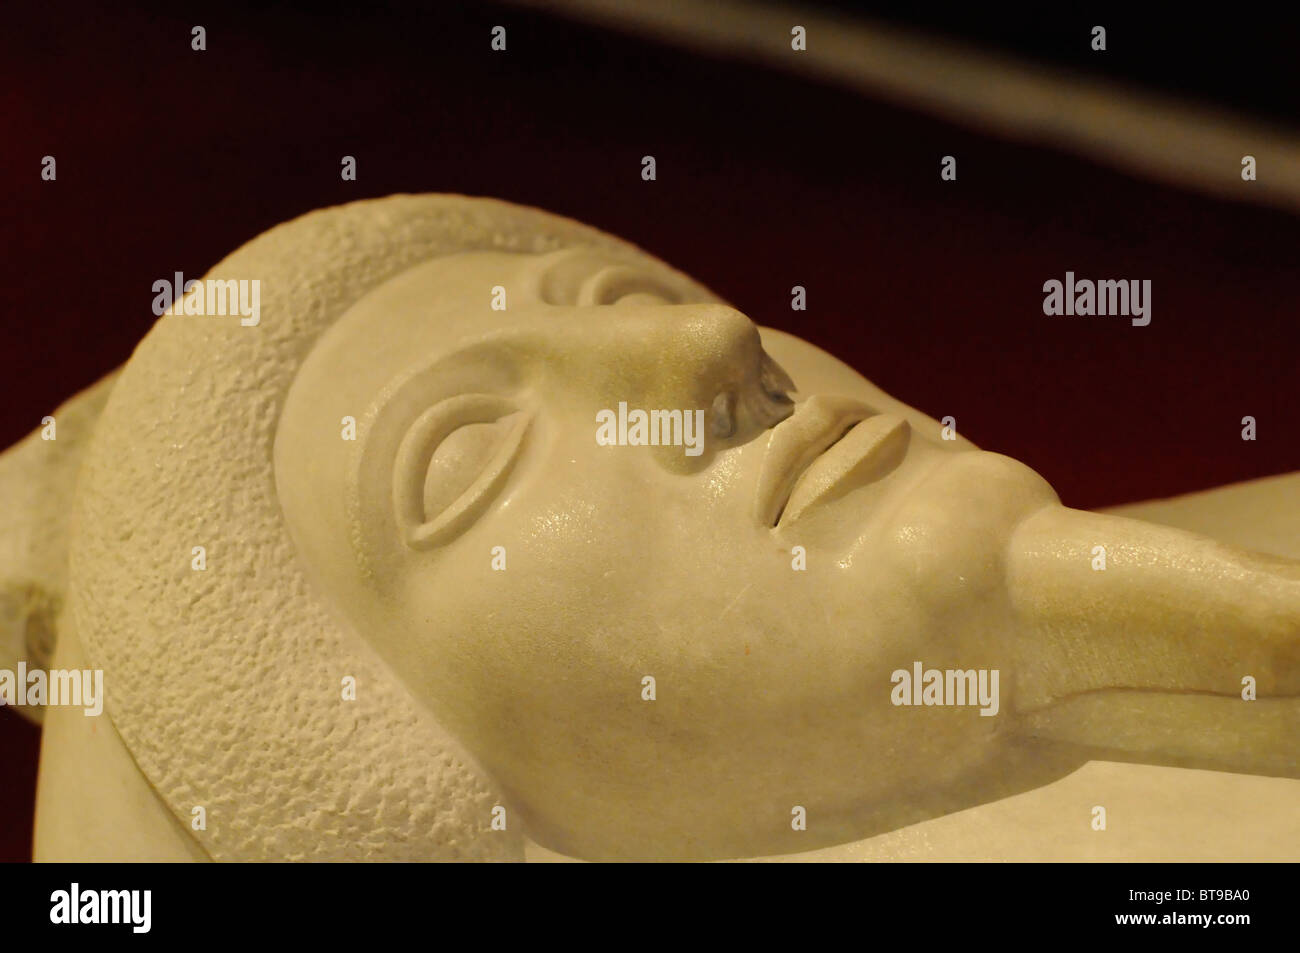 Menschenaffen Sarkophag des Mannes im griechischen Stil, Archäologisches Museum (Arkeoloji Muzesi), Istanbul, Türkei Stockfoto